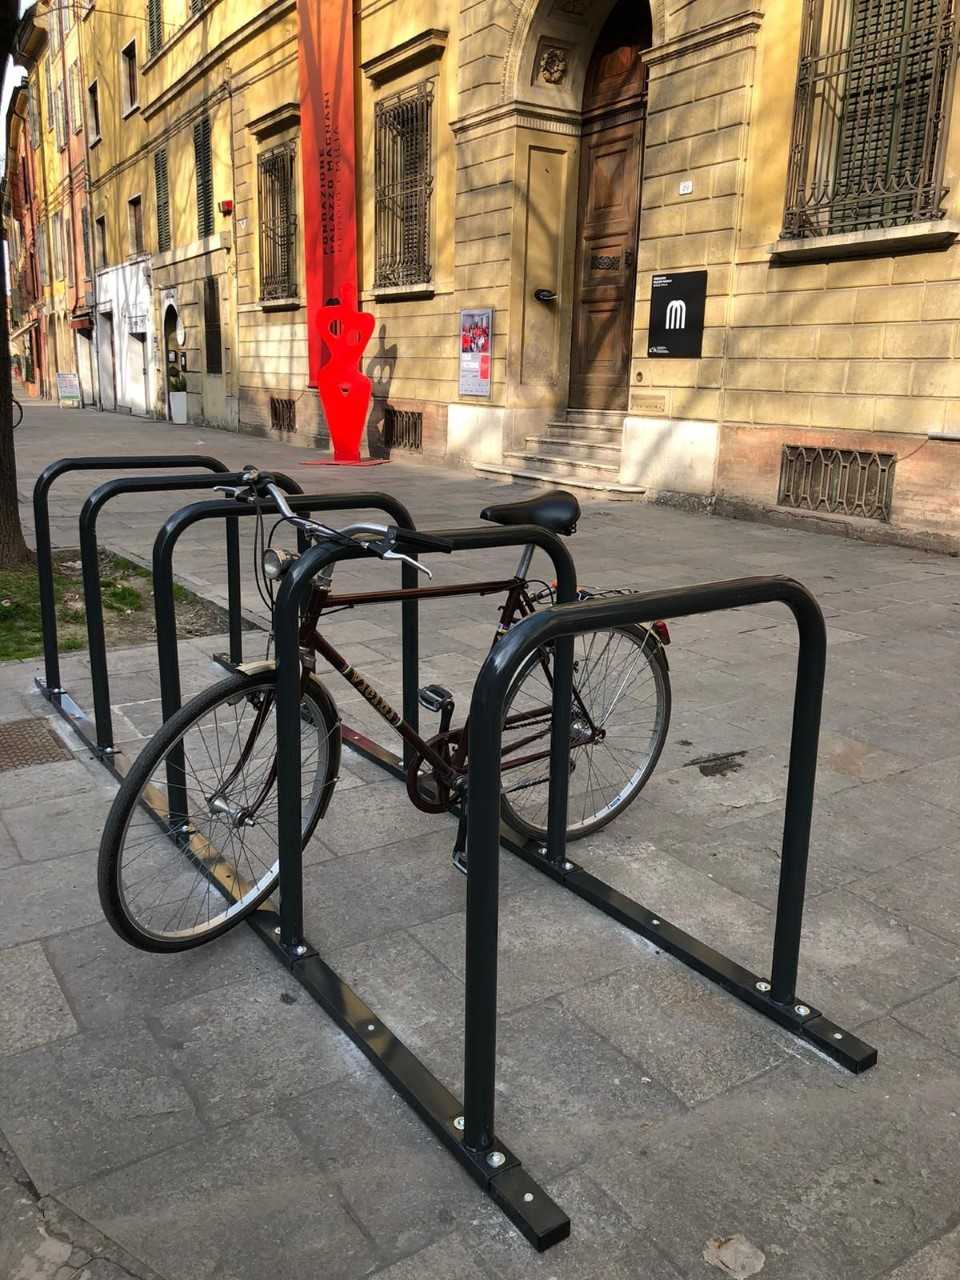 Reggio. Rastrelliere per biciclette in centro con formato antifurto:  investimento da 70mila euro